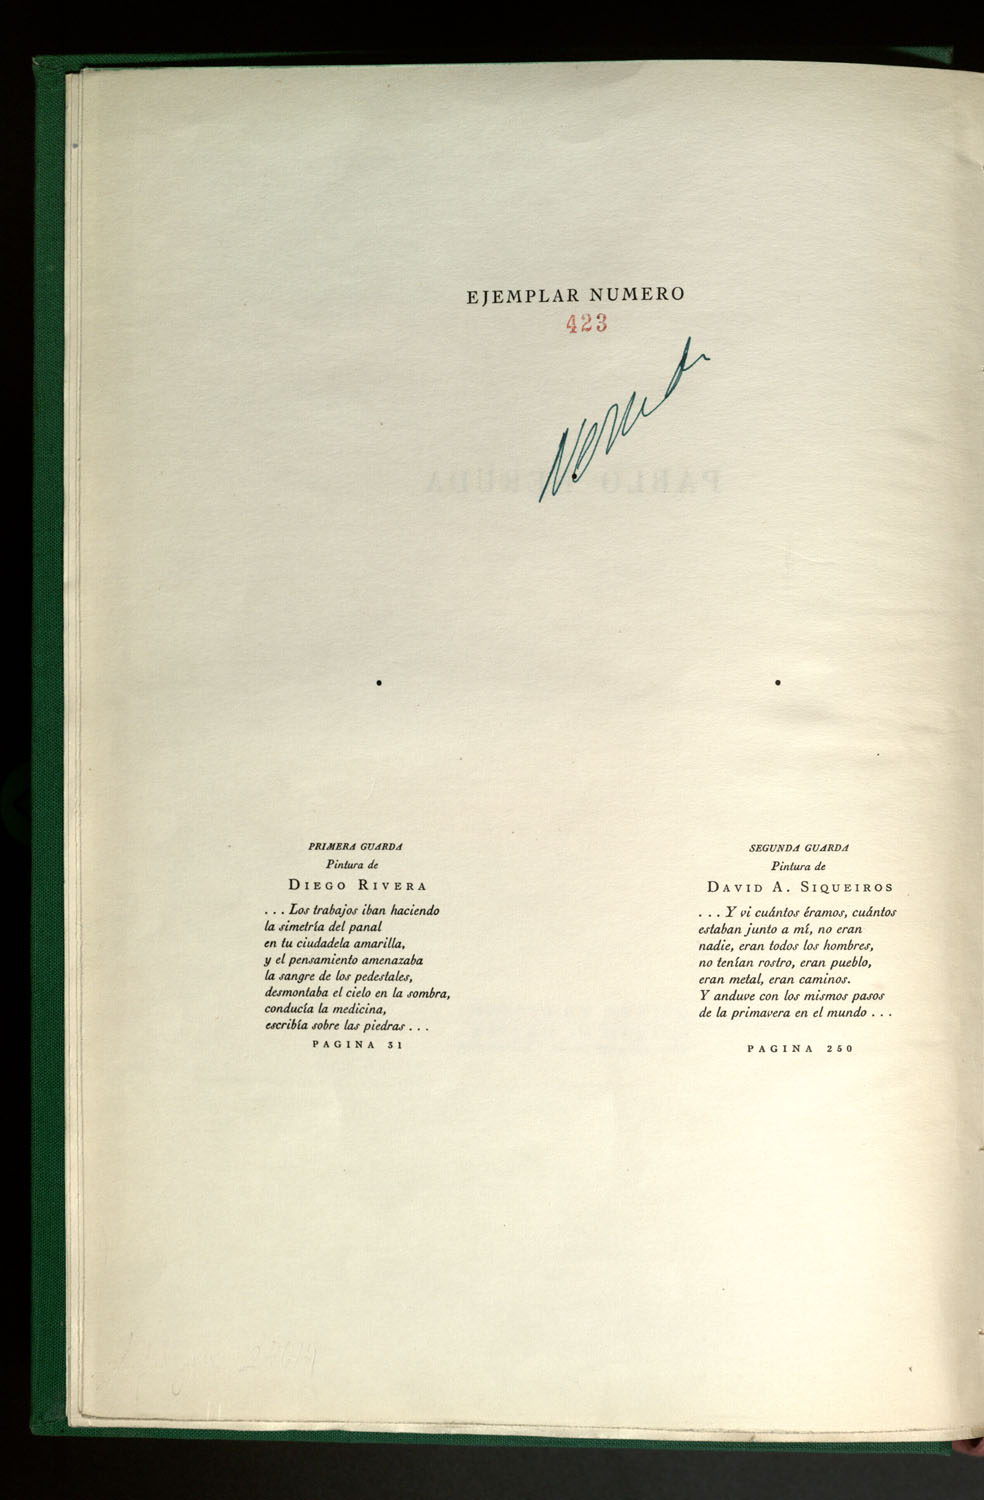 Canto General de Pablo Neruda. Primera Edición. México 1950, ejemplar 423